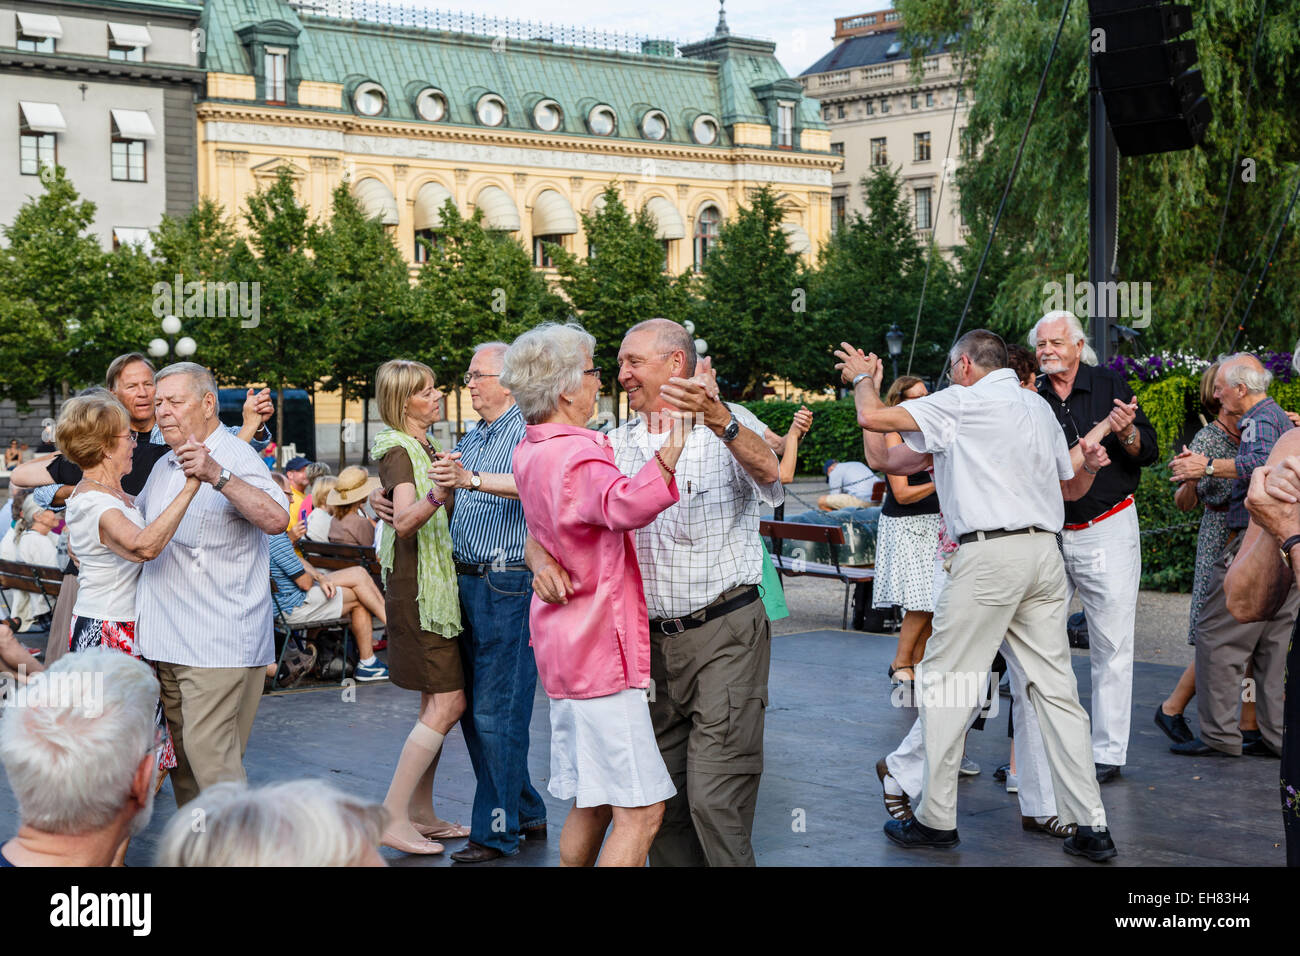 People dancing at Kungstradgarden (King's Garden) park, Stockholm, Sweden, Scandinavia, Europe Stock Photo